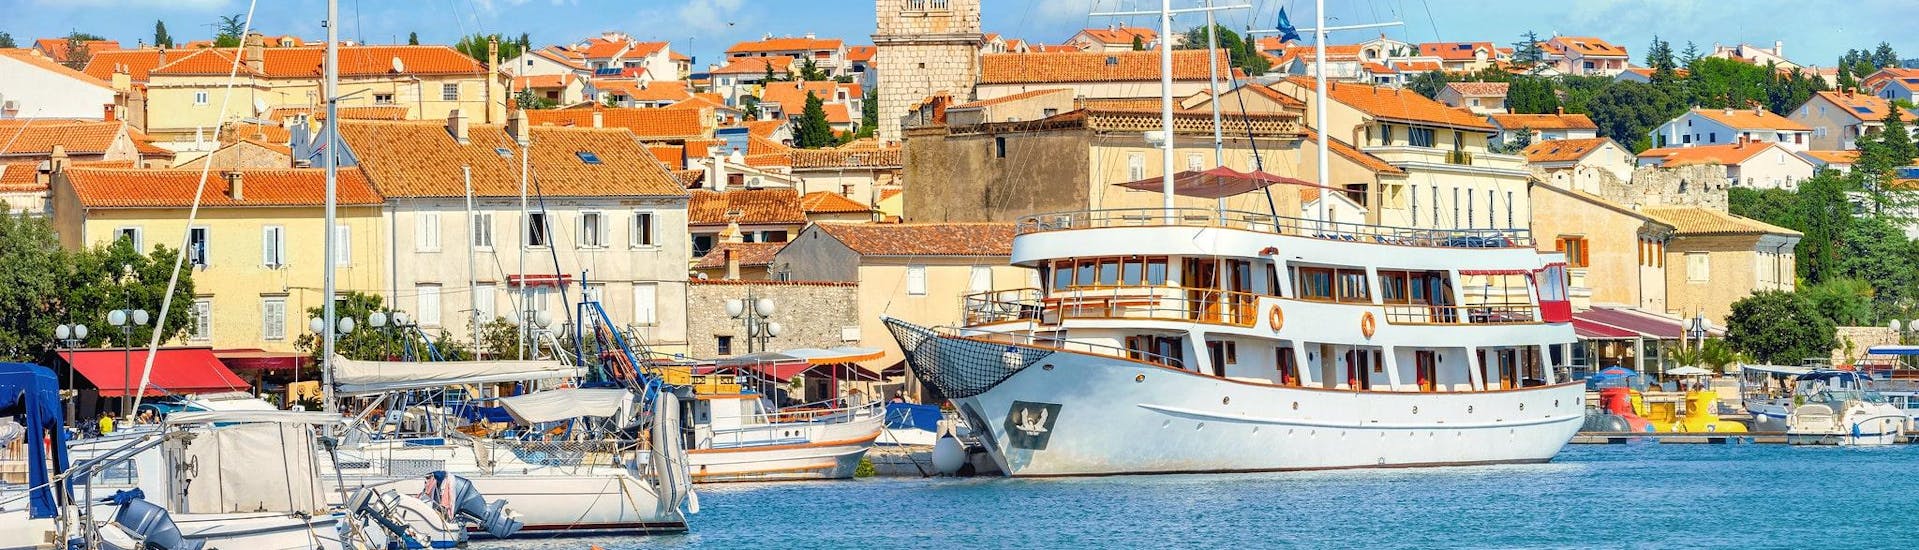 Blick auf den Hafen von Krk, der ein beliebter Ausgangspunkt für viele Bootstouren rund um die Insel Krk ist.